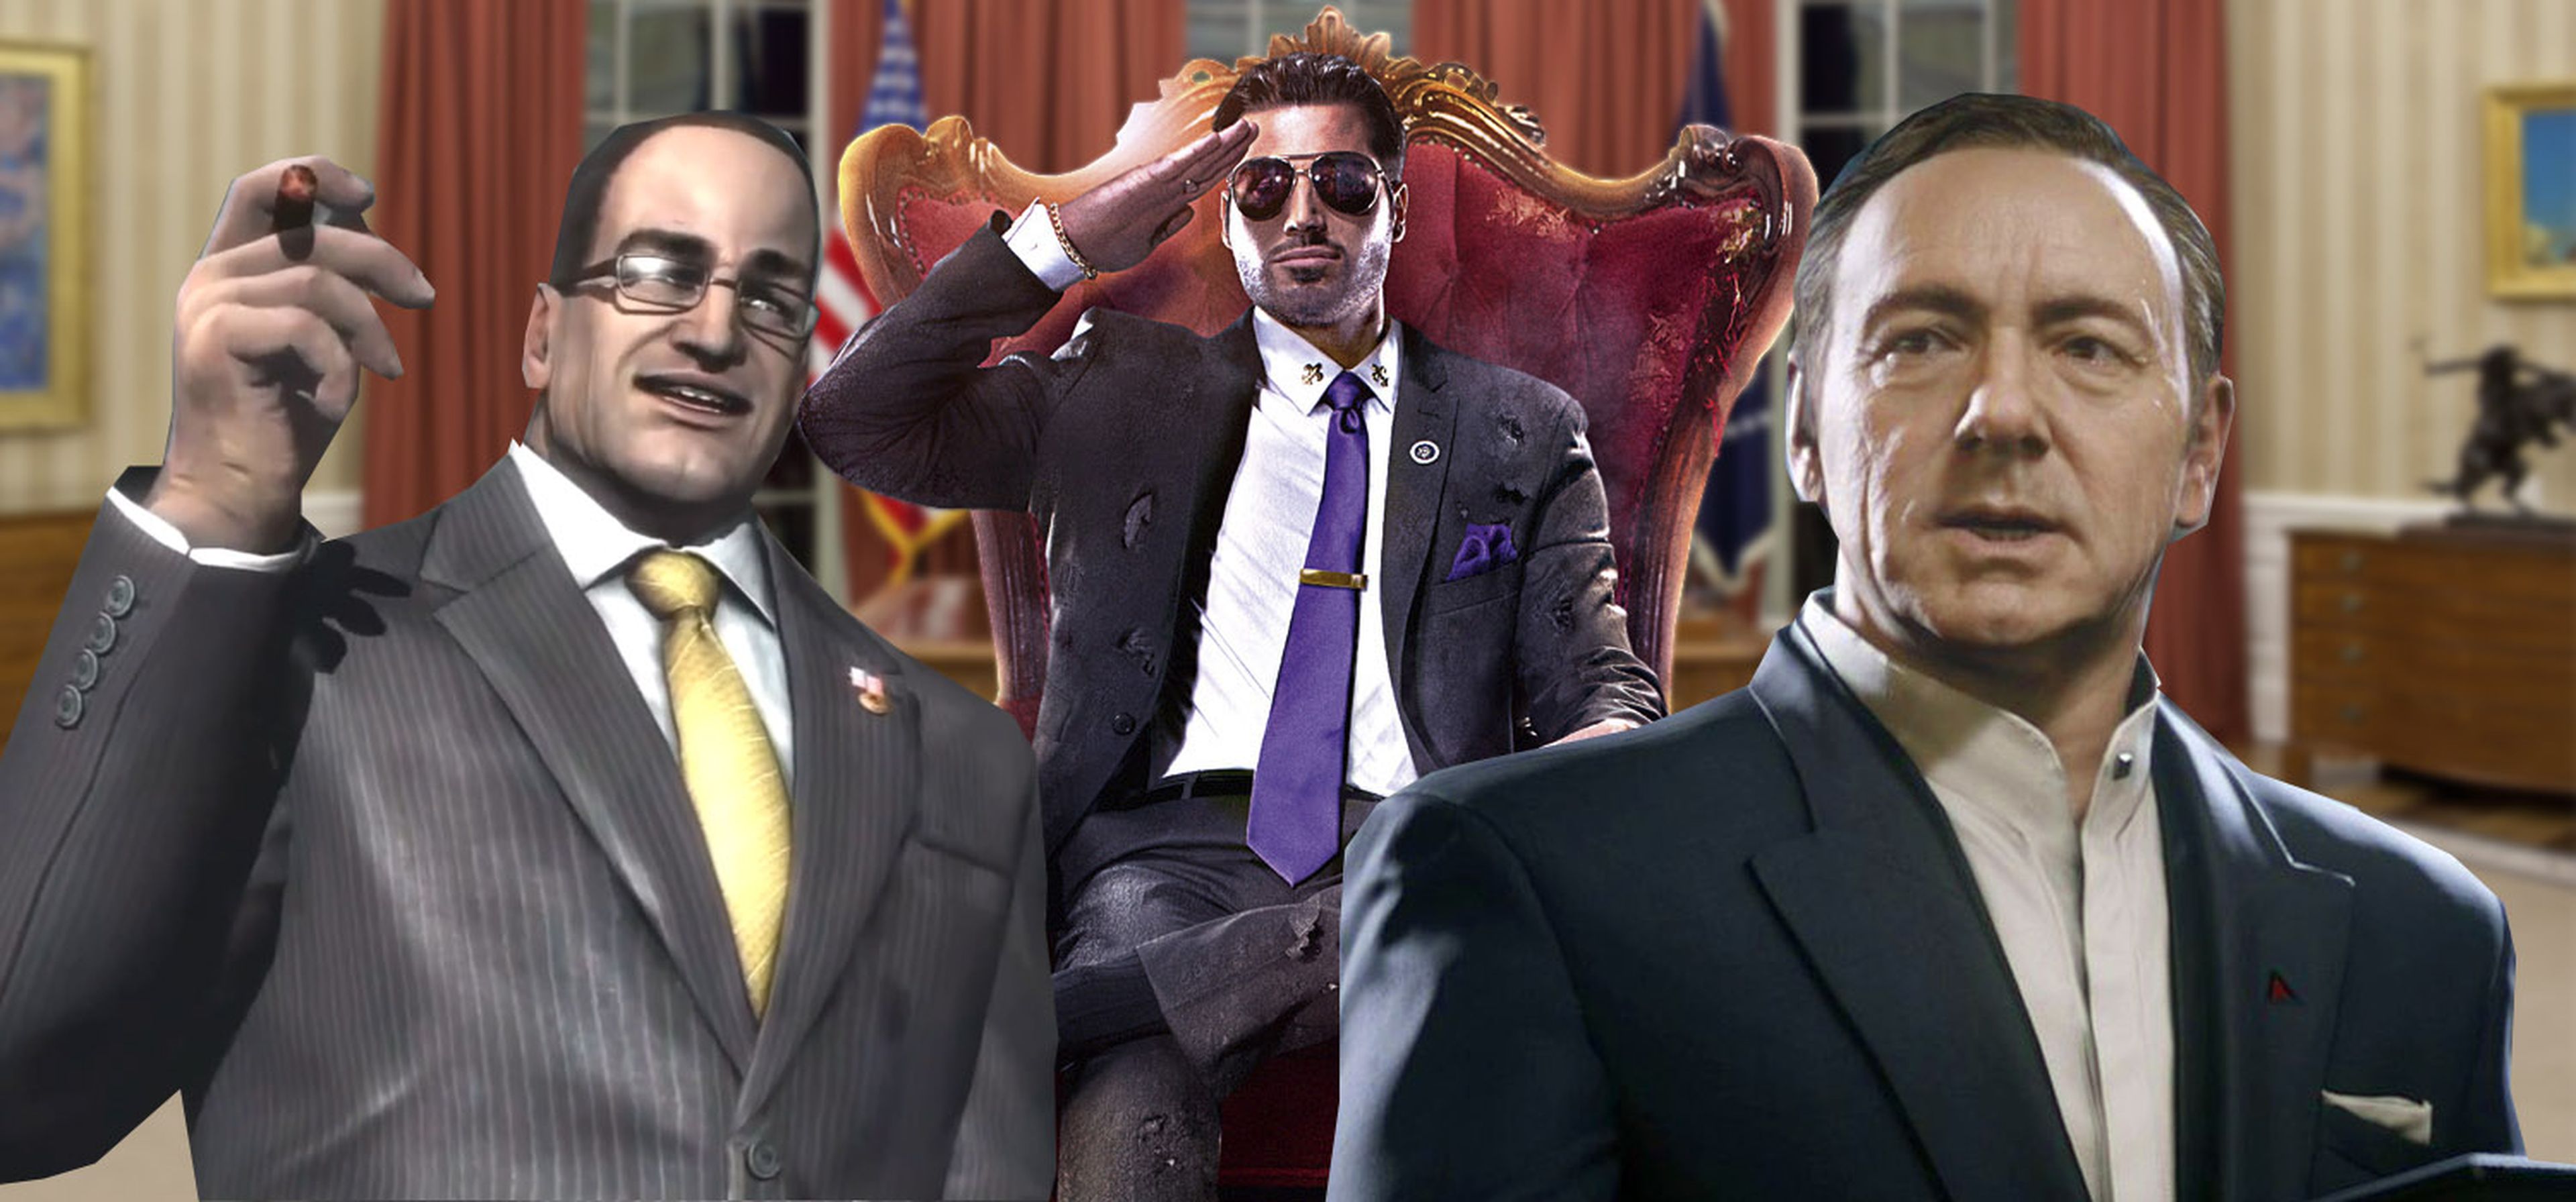 Los presidentes más polémicos de los videojuegos